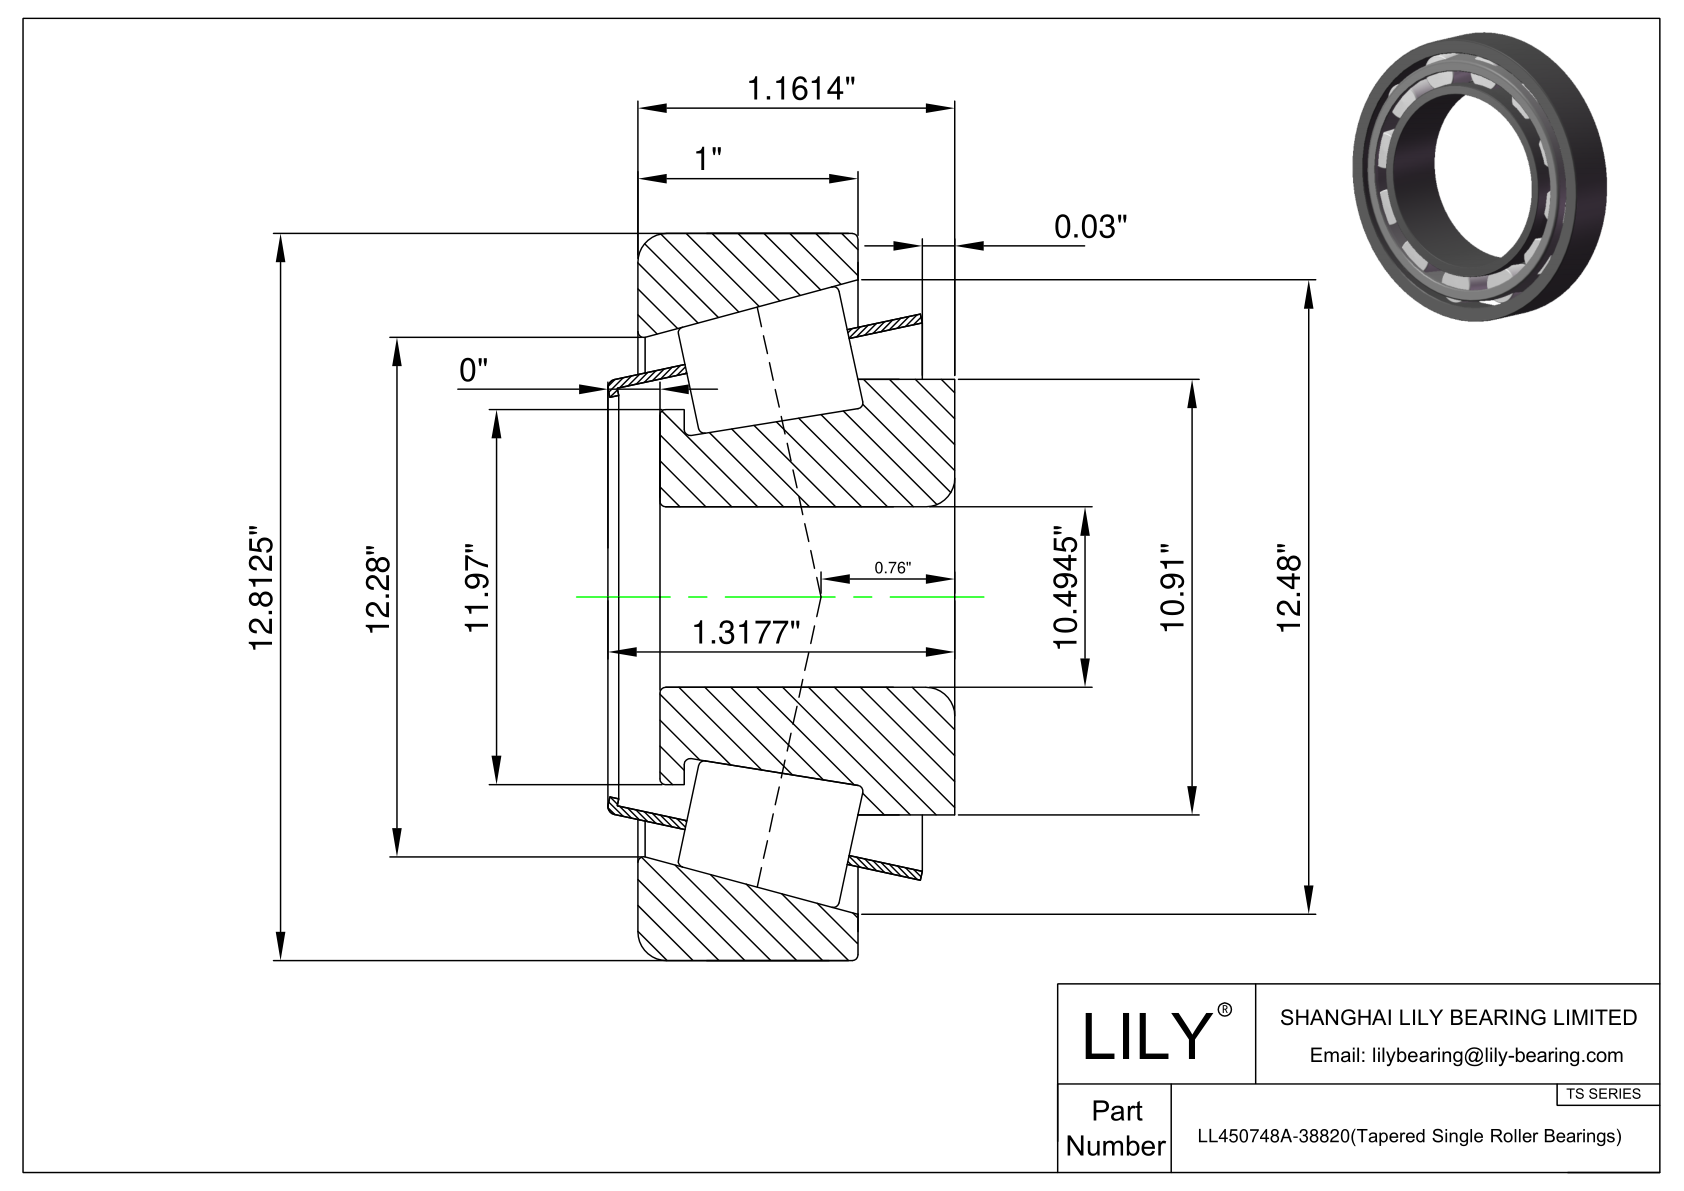 LL450748A-38820 TS系列(圆锥单滚子轴承)(英制) CAD图形